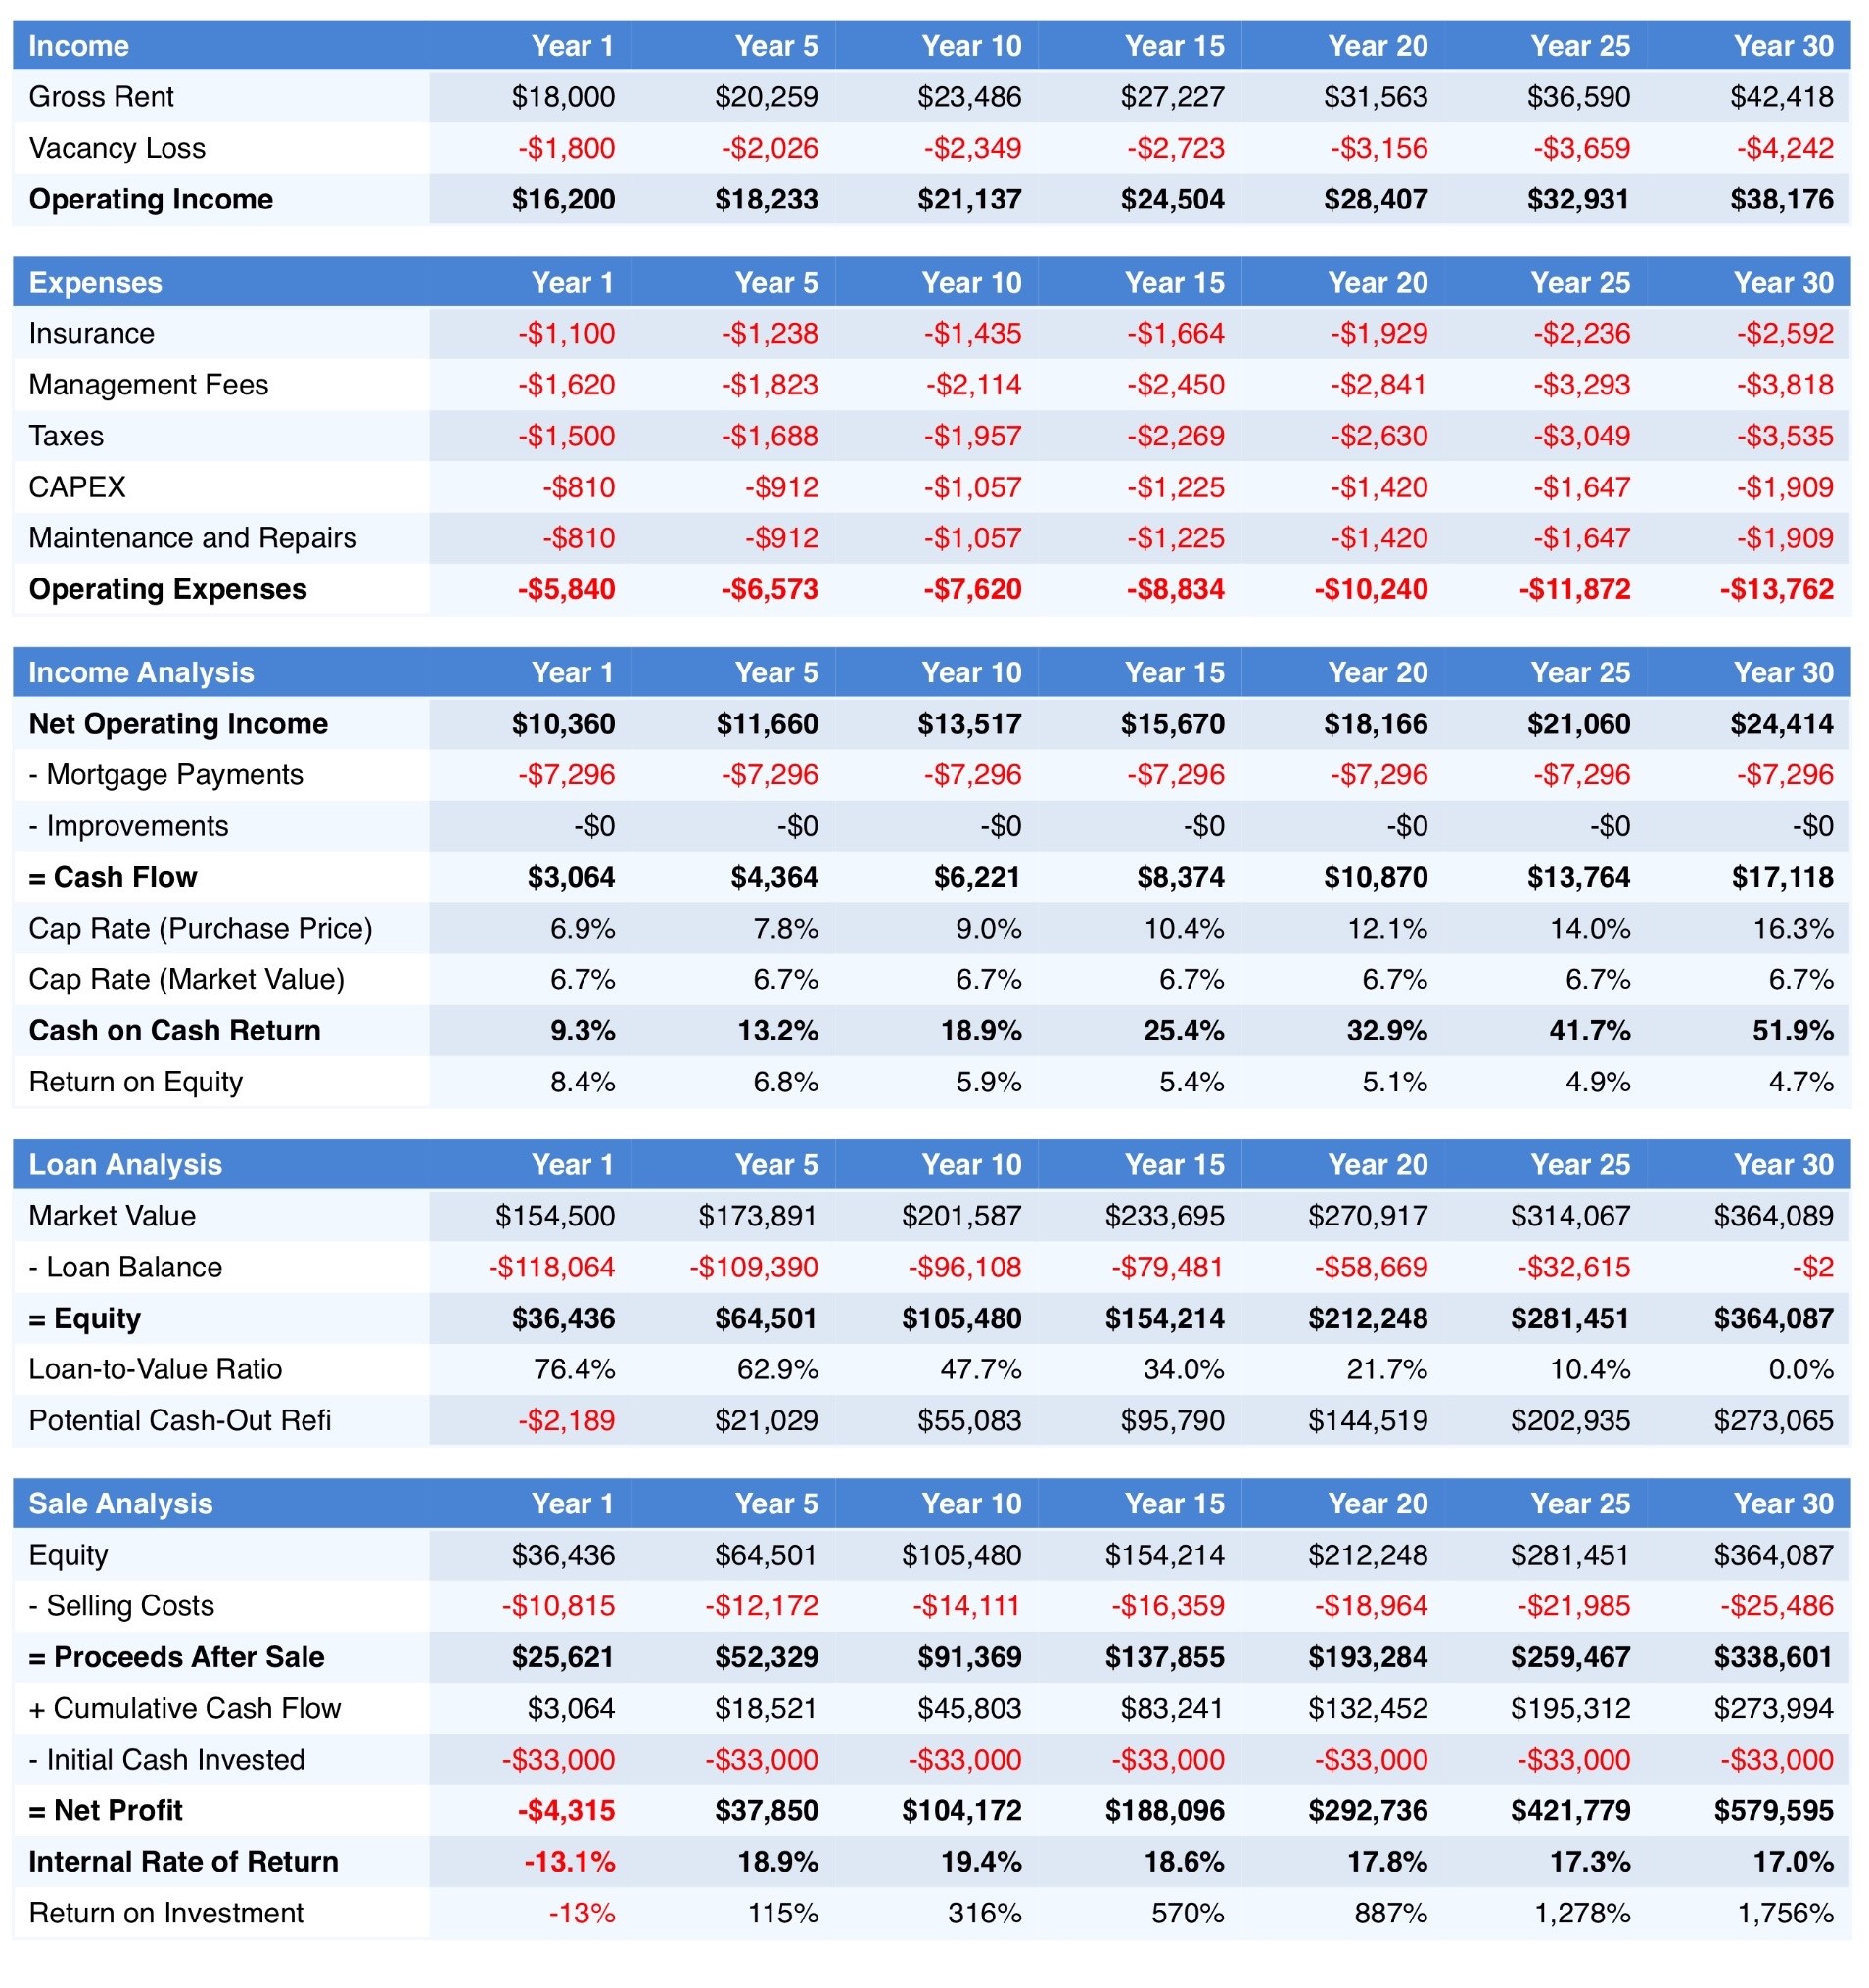 Real Estate vs 401k 30 Year Summary